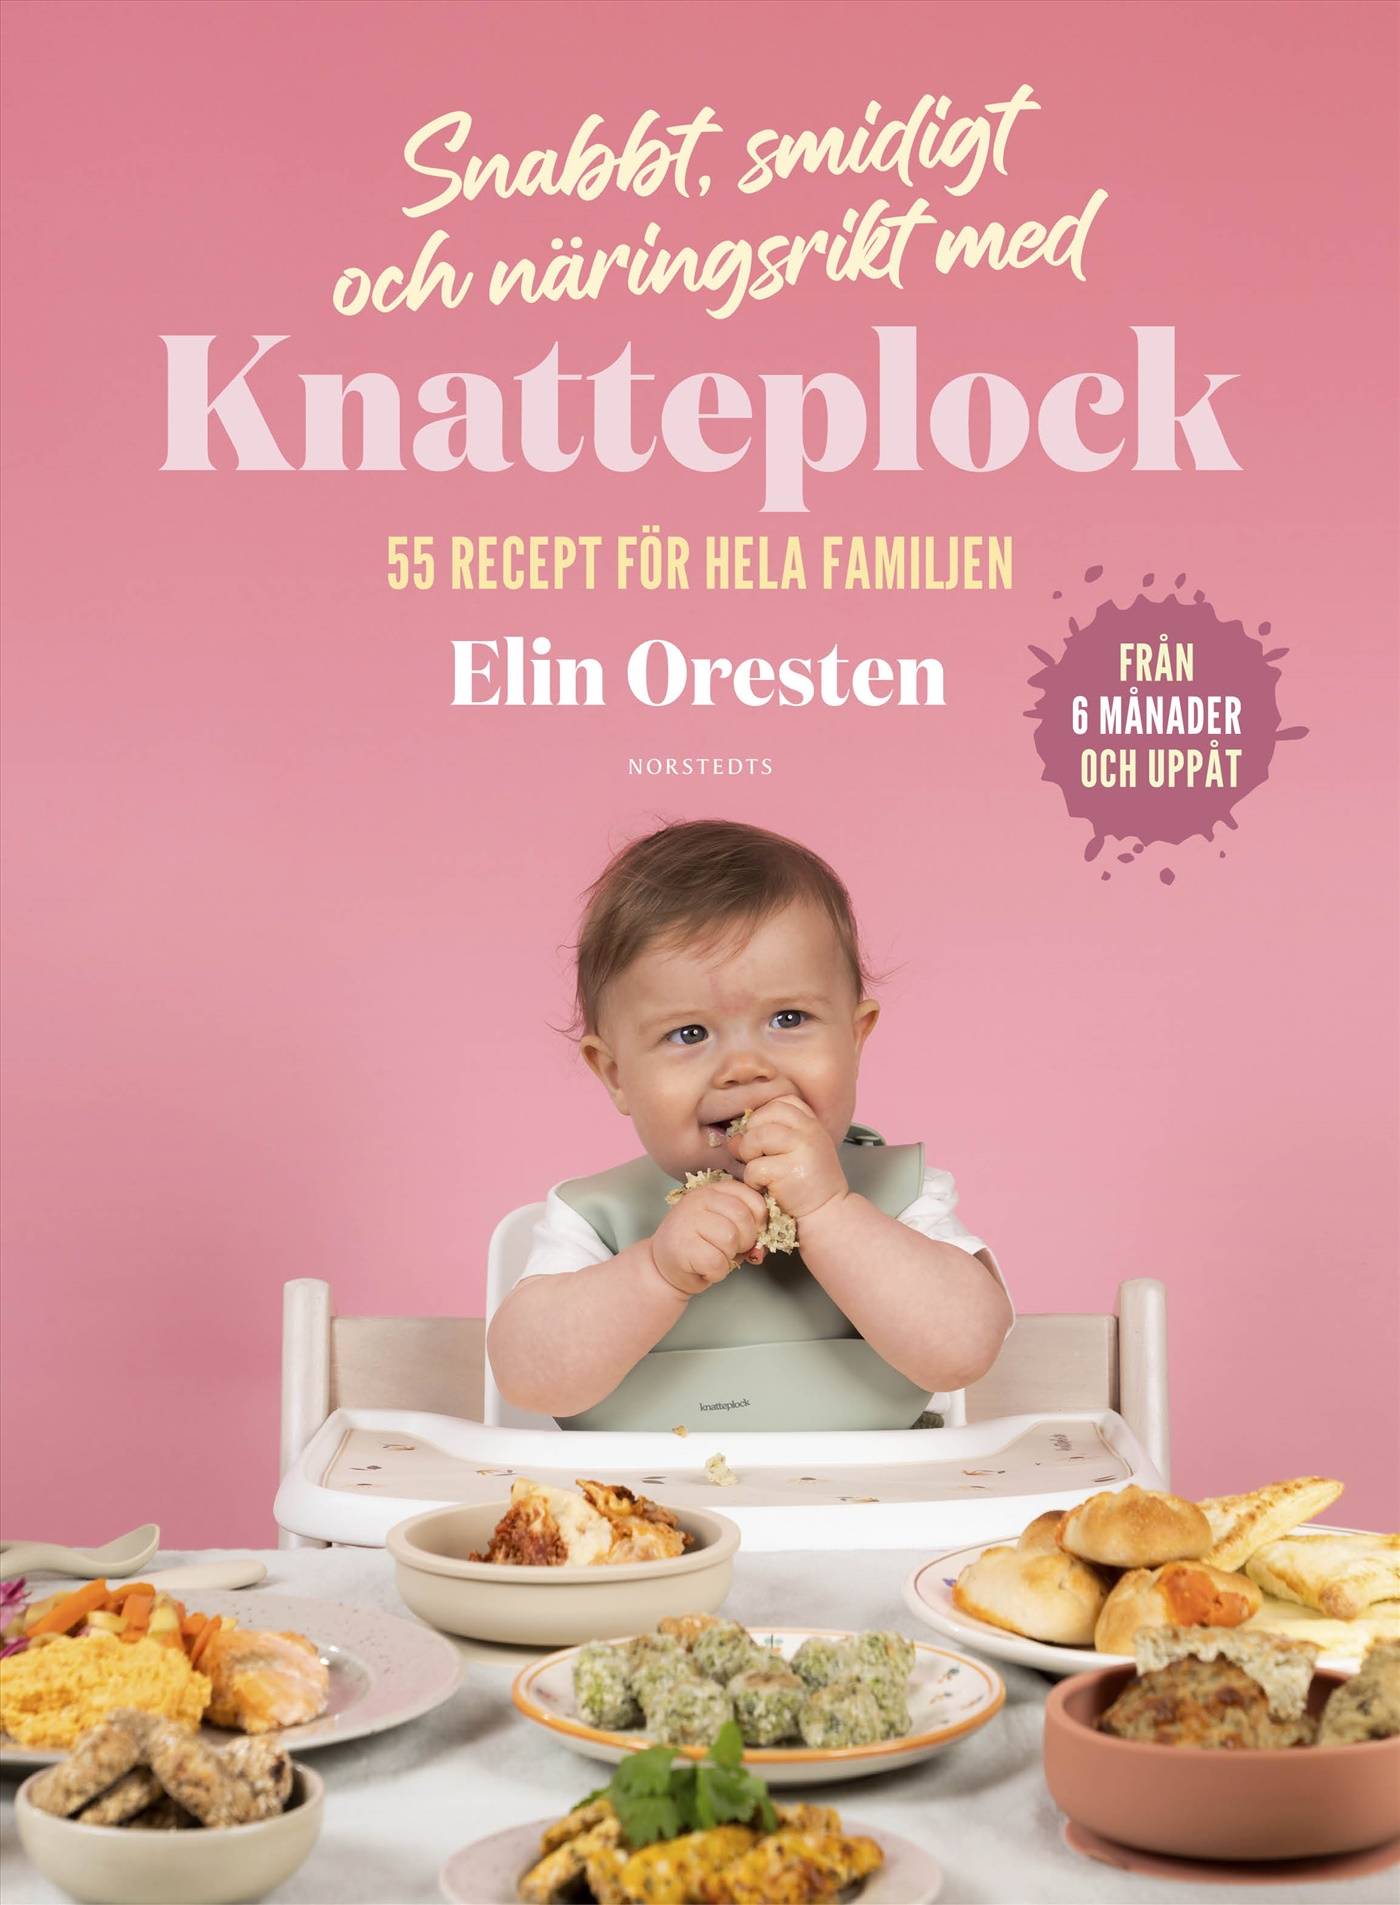 Snabbt, smidigt och näringsrikt med Knatteplock : 55 recept för hela familjen